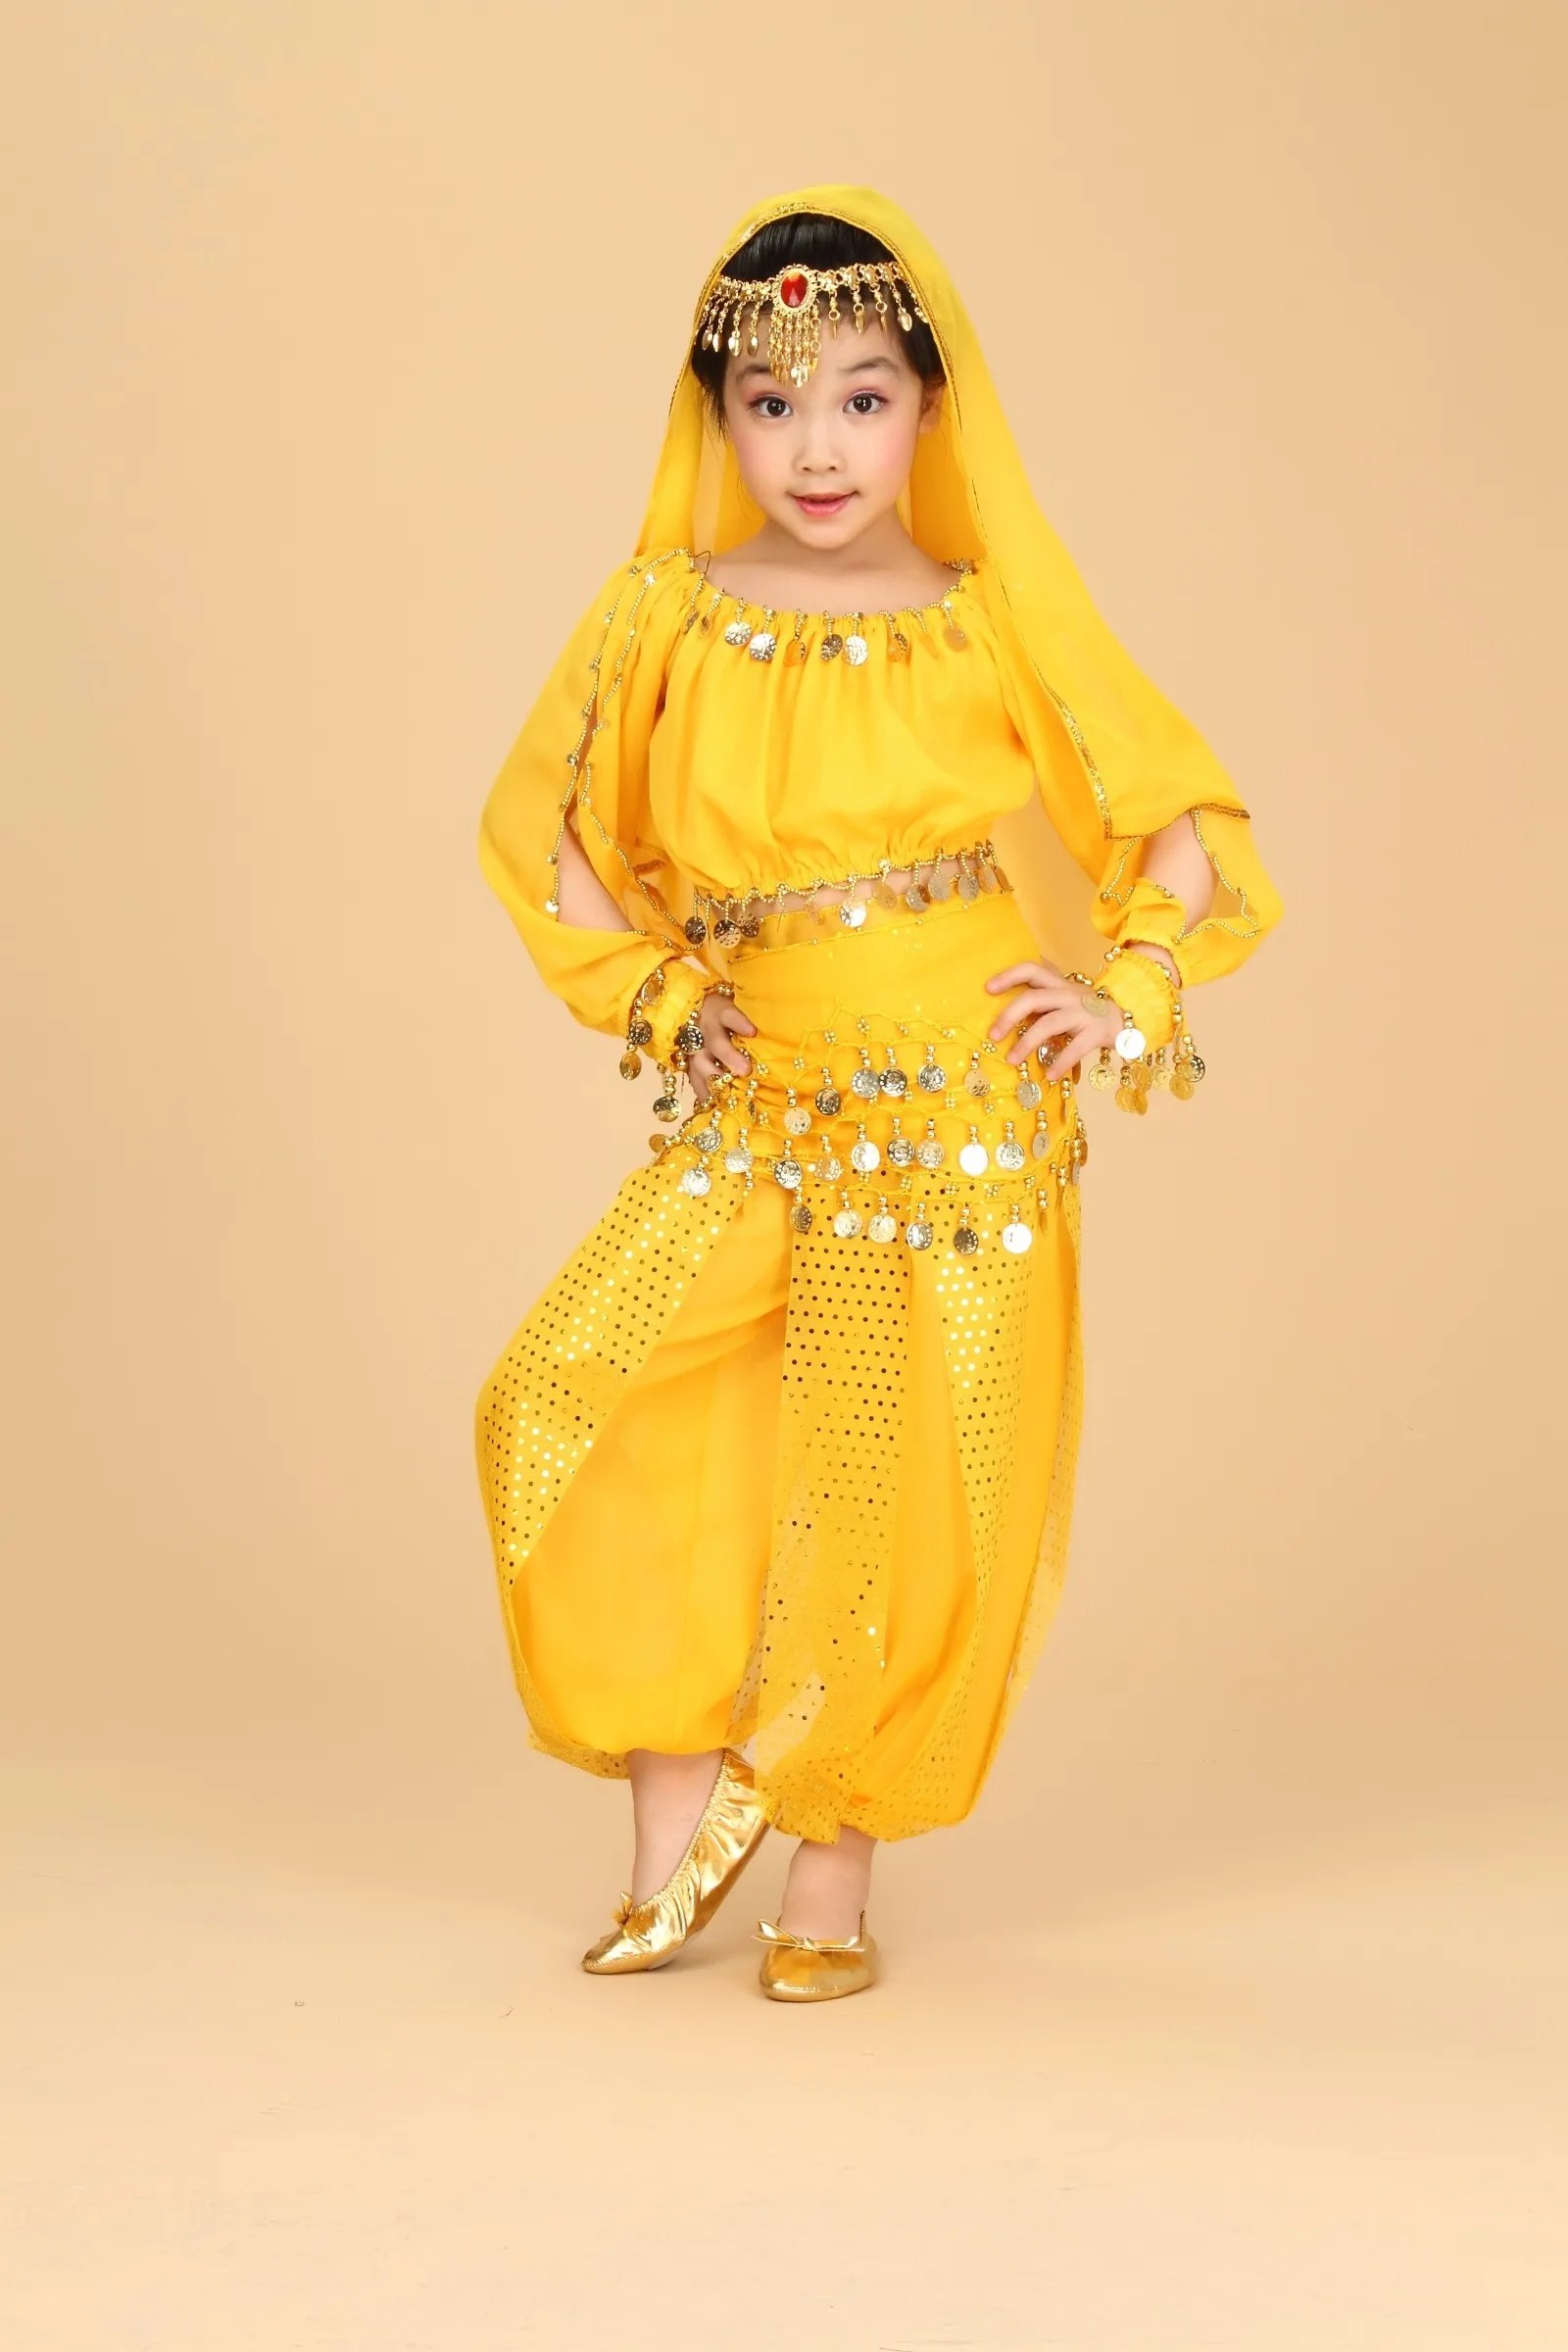 Детский костюм для танца живота Болливуд восточное платье для танца живота комплект индийский Египетский костюм брюки Топ Одежда для танцев для девочек